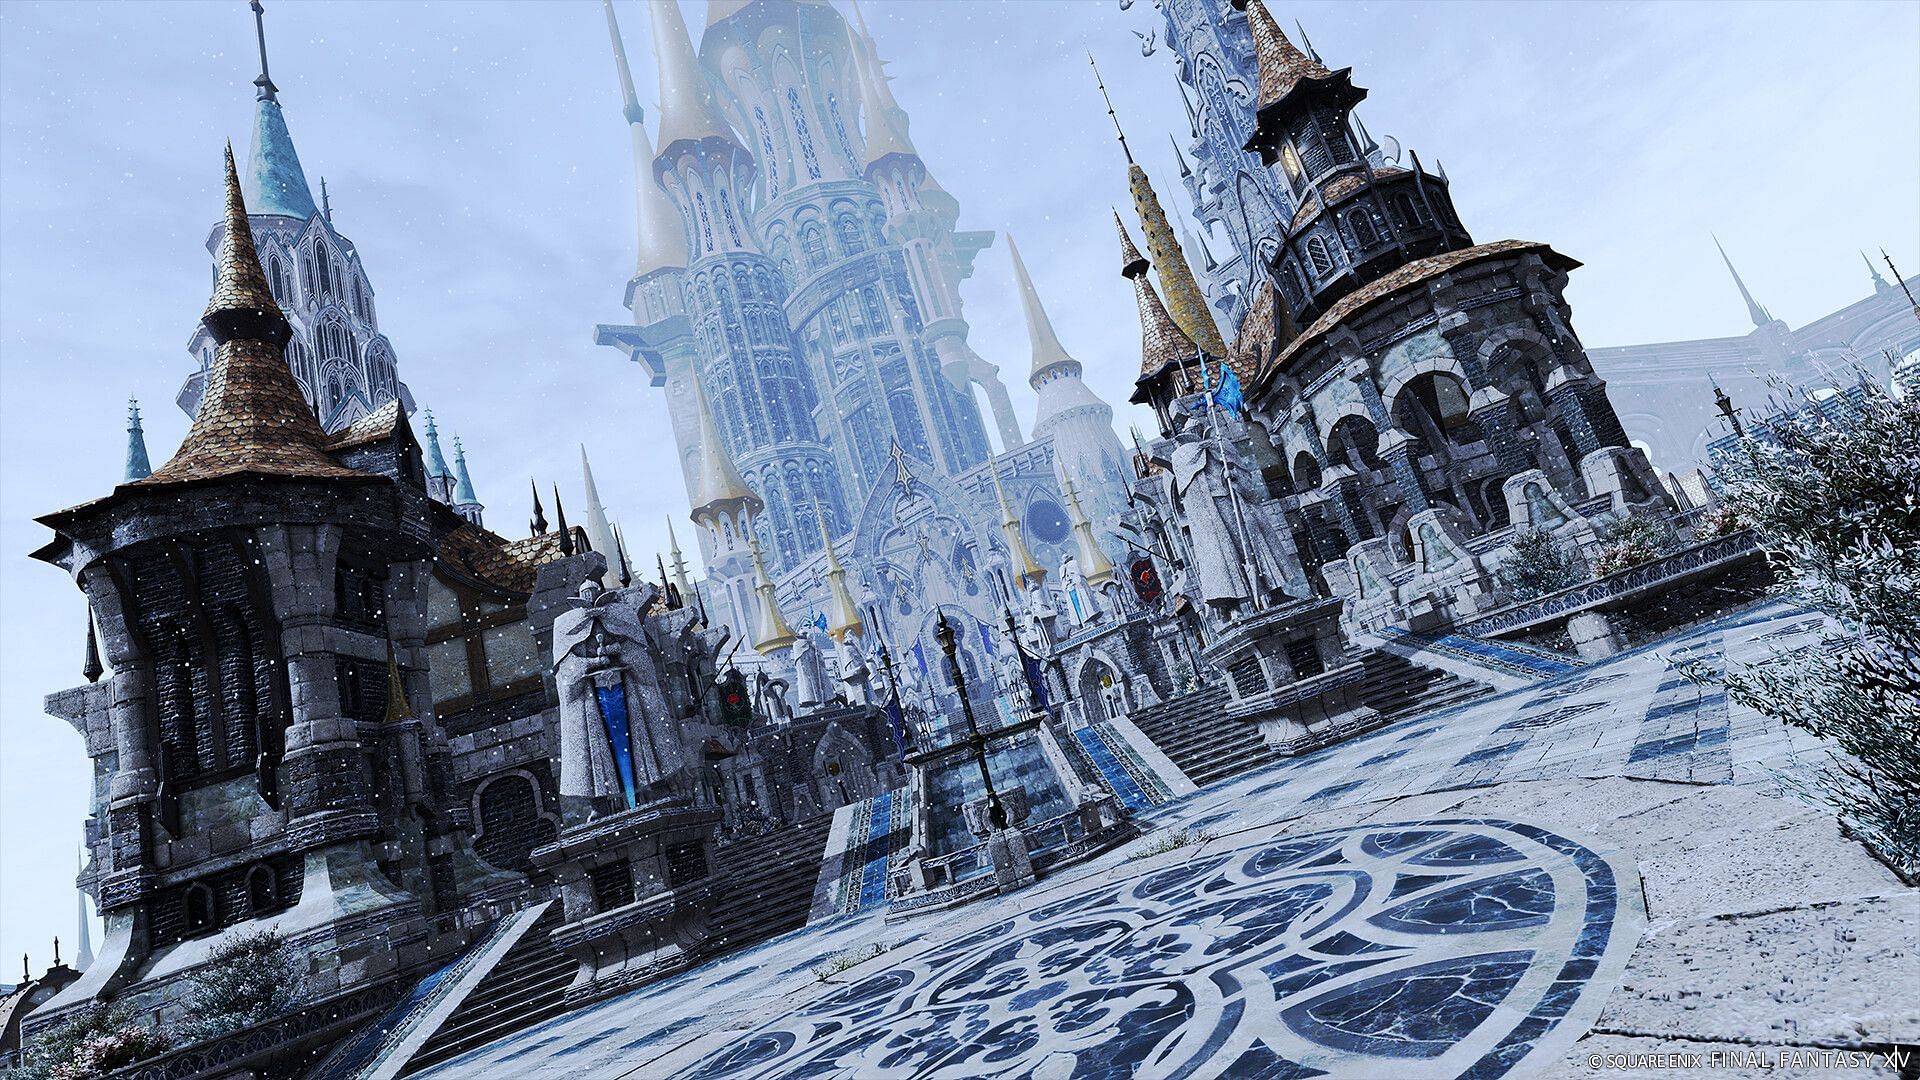 Explore the massive world of Final Fantasy (Image via Squire Enix)